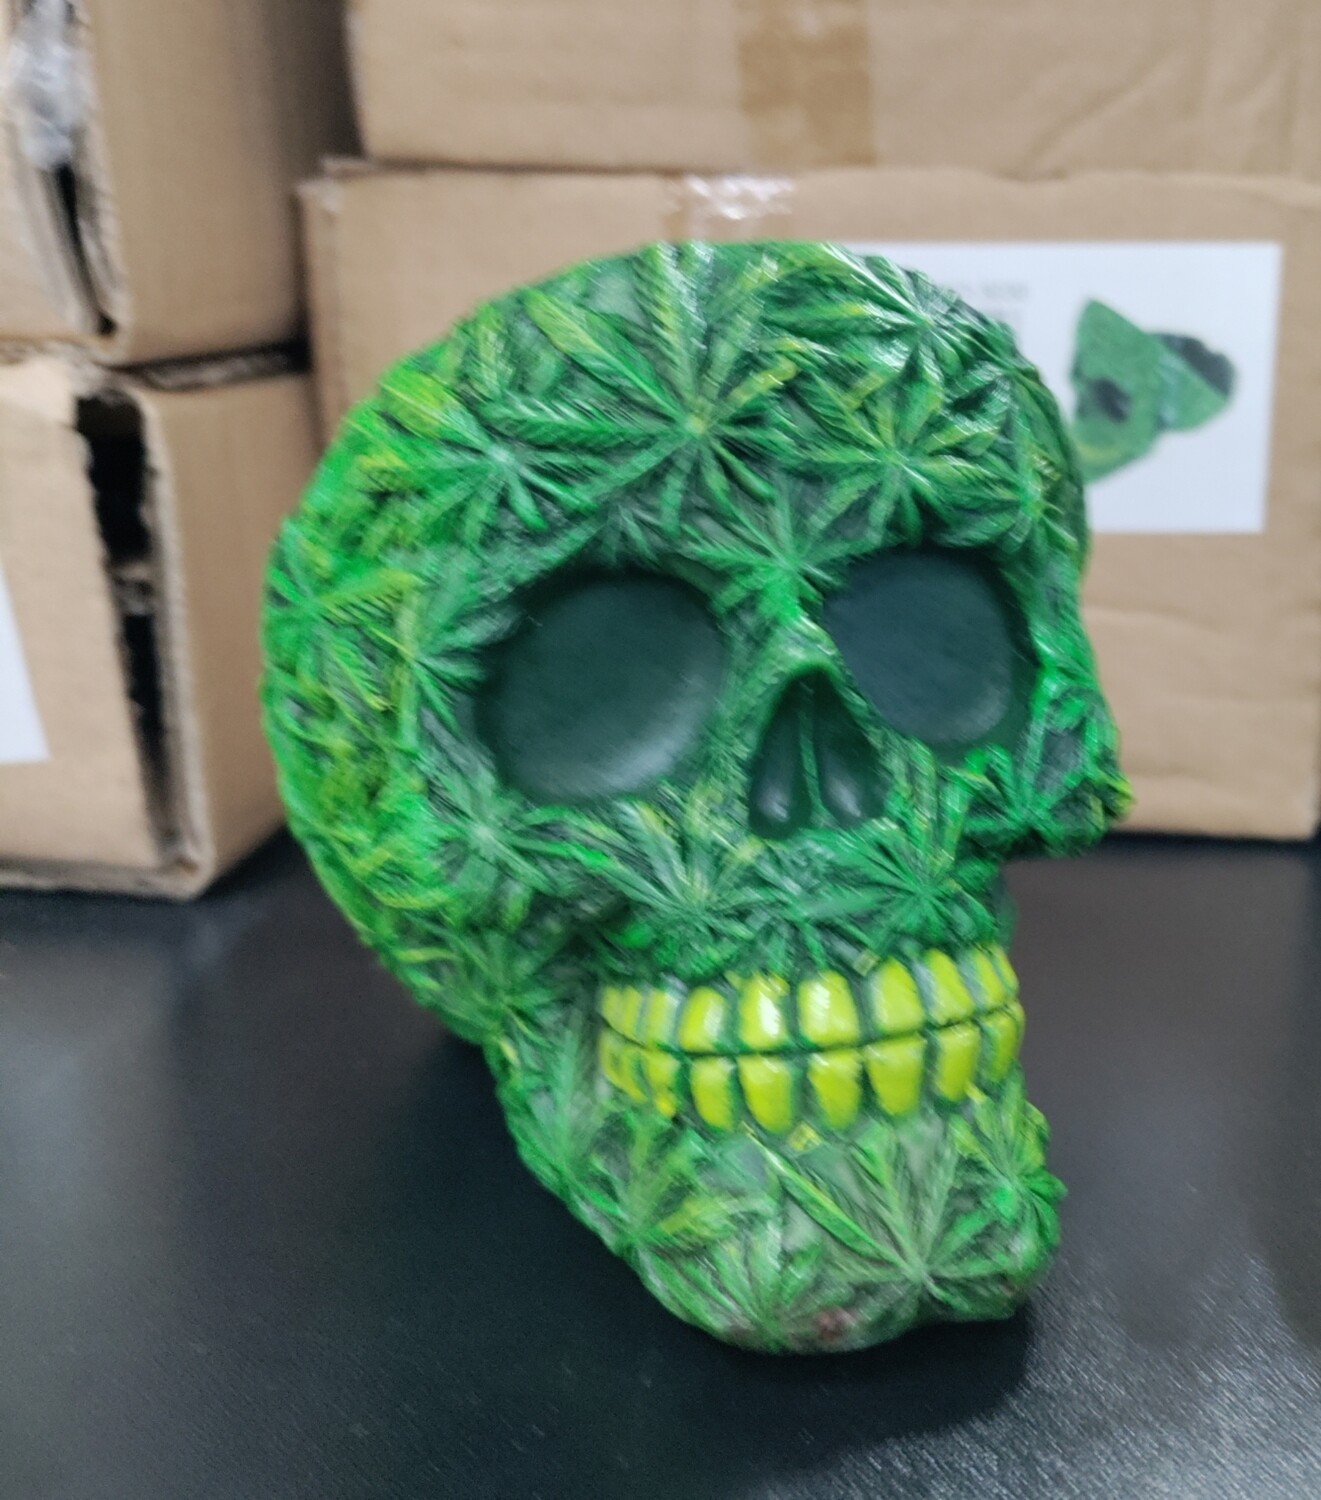 Leaf Skeleton Head Ashtray